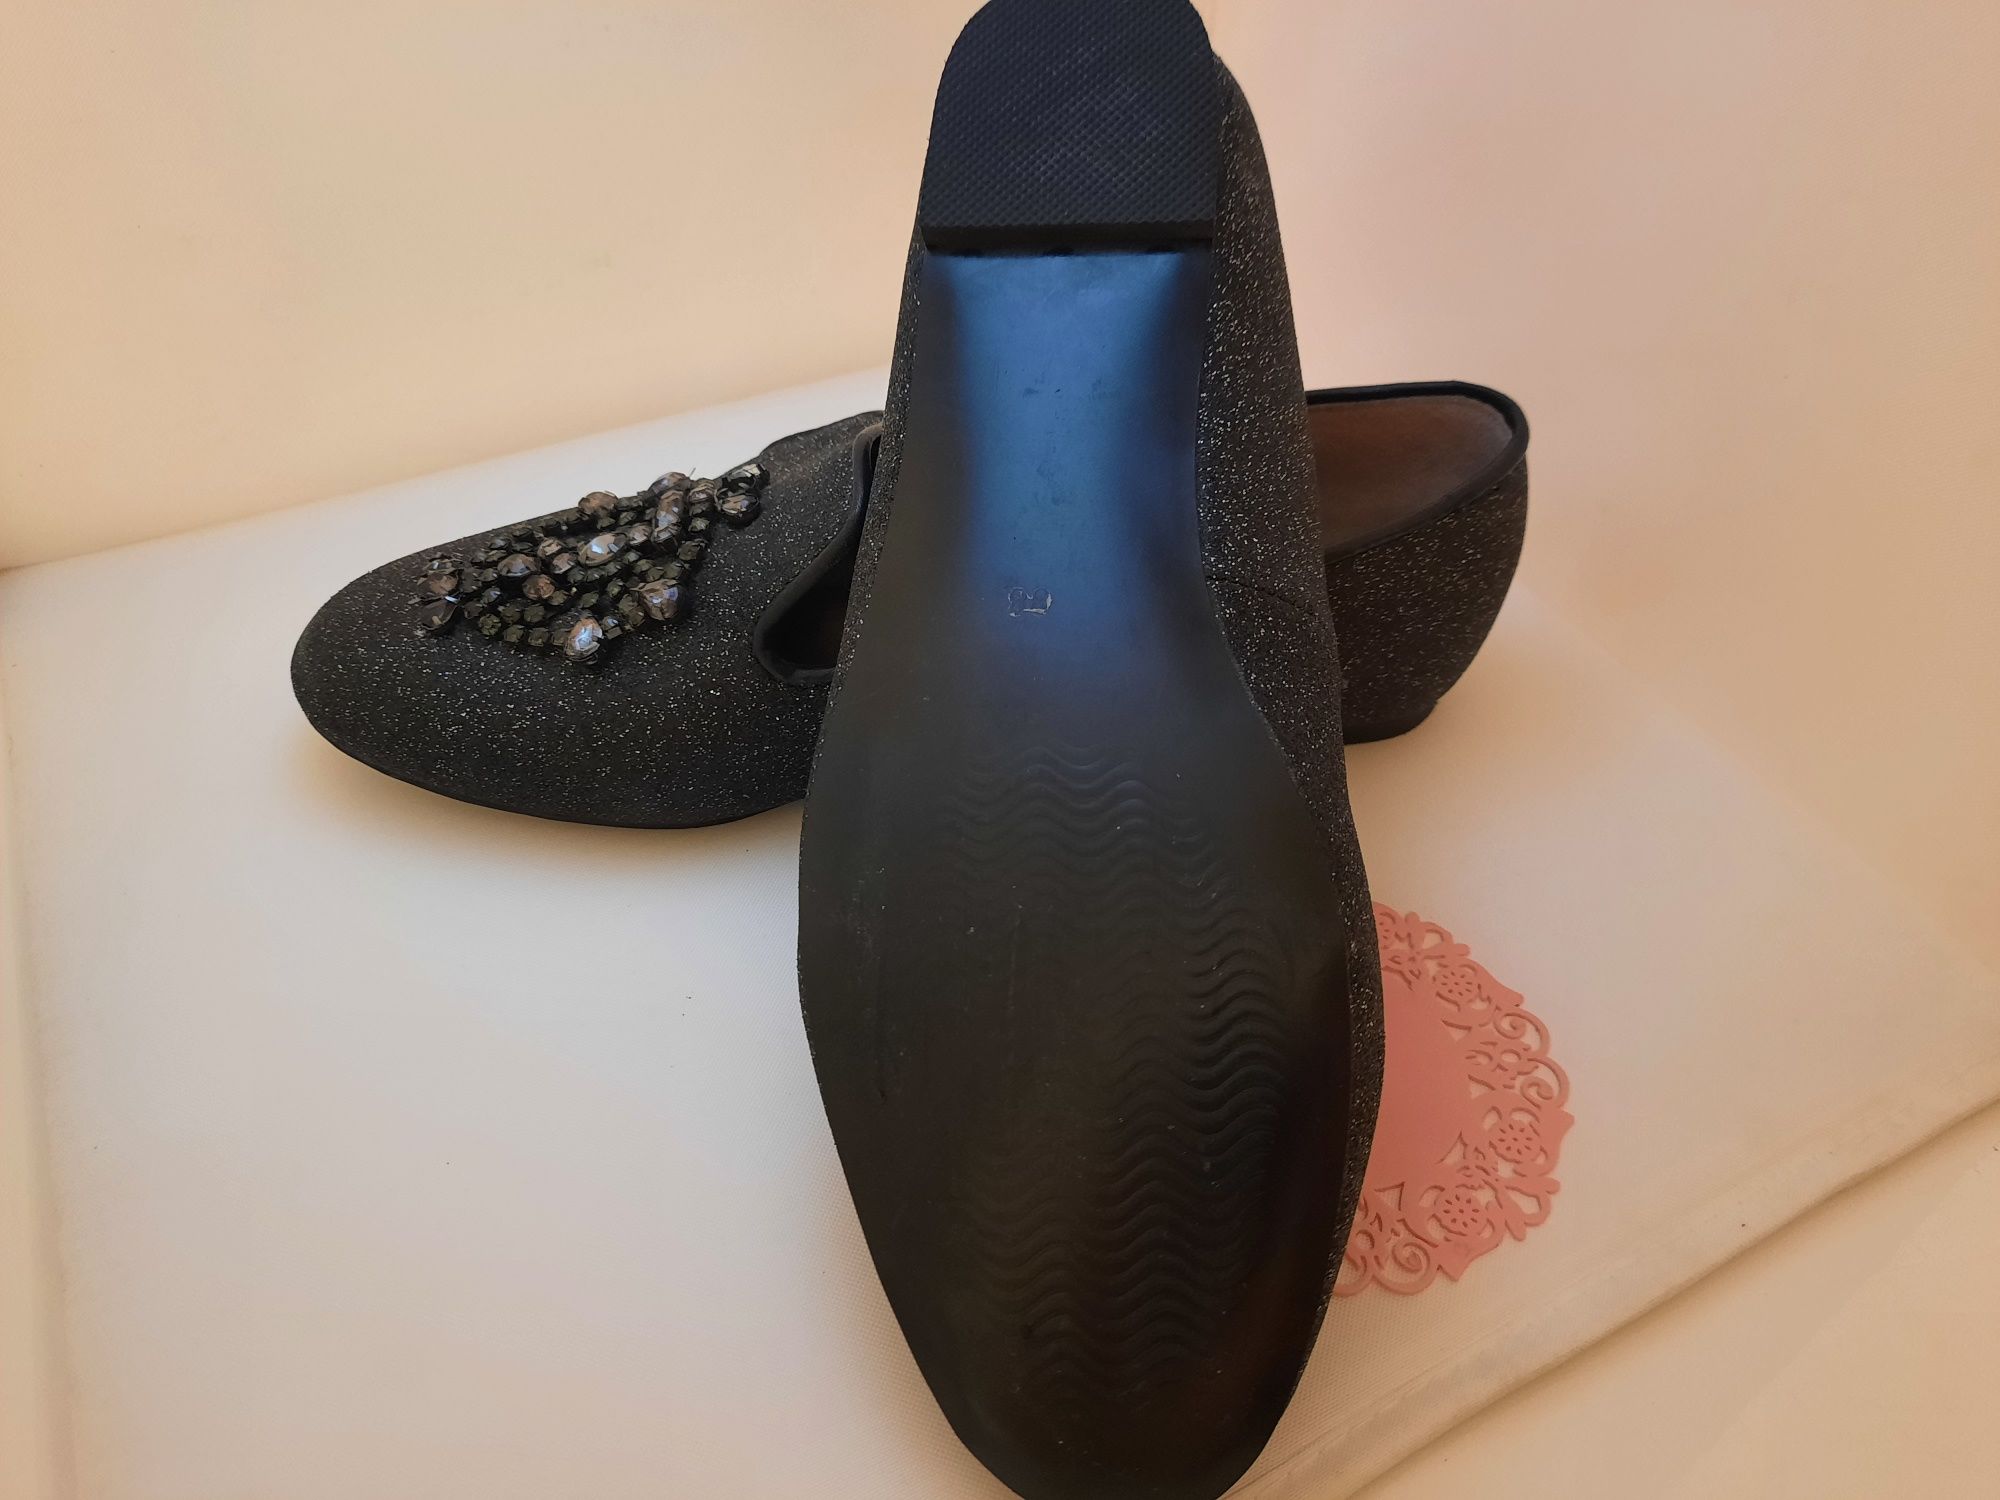 Sapatos pretos brilhantes com pedras
Adolfo Dominguez